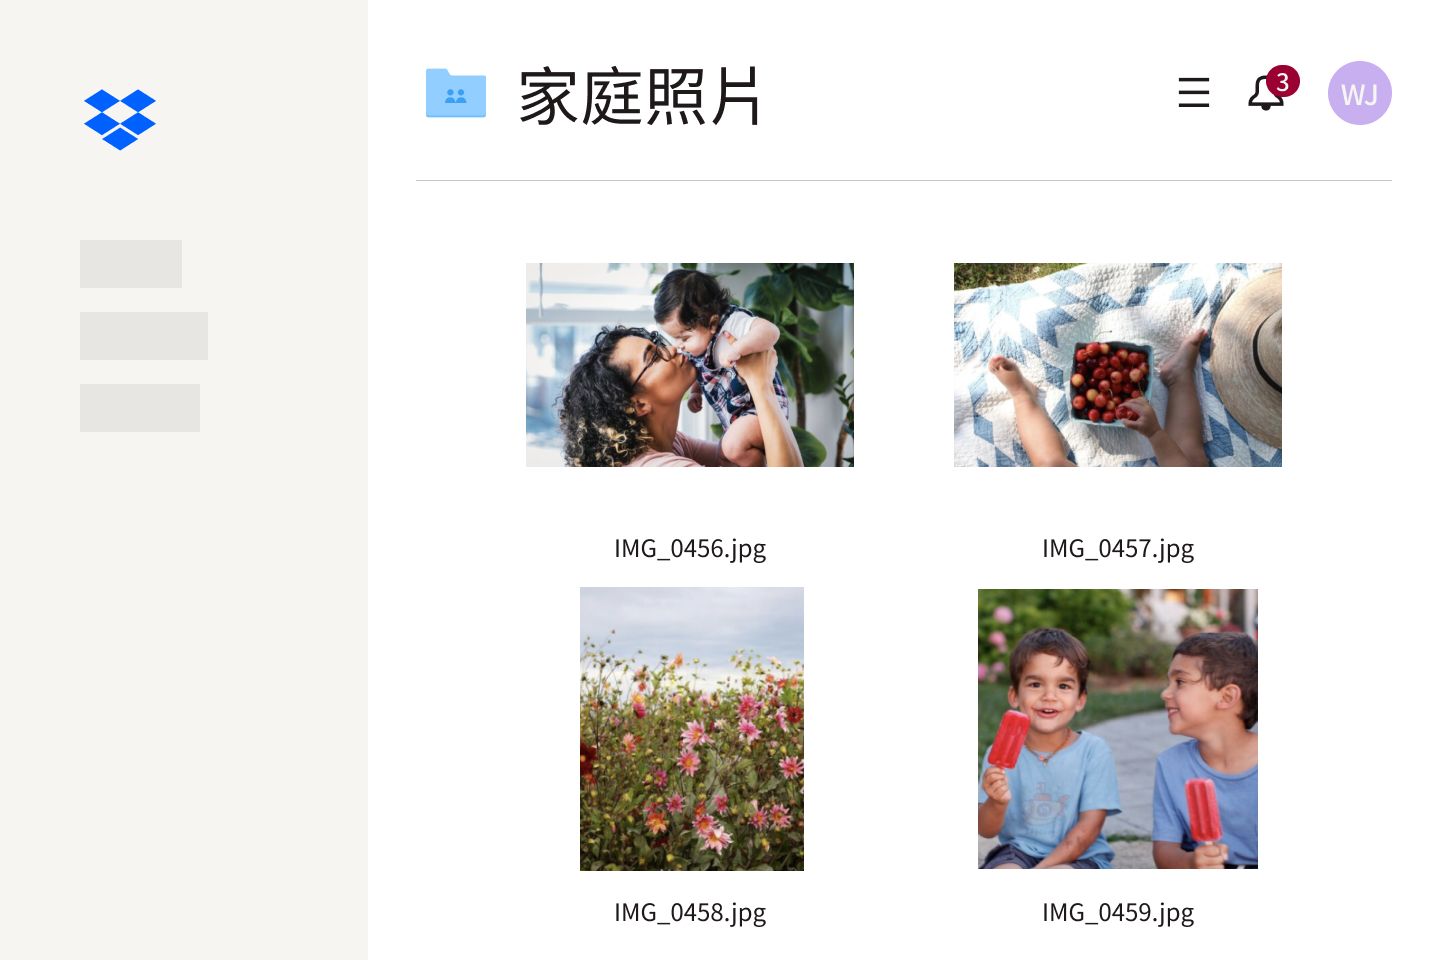 儲存在 Dropbox 上名為「家人相片」資料夾的一系列相片